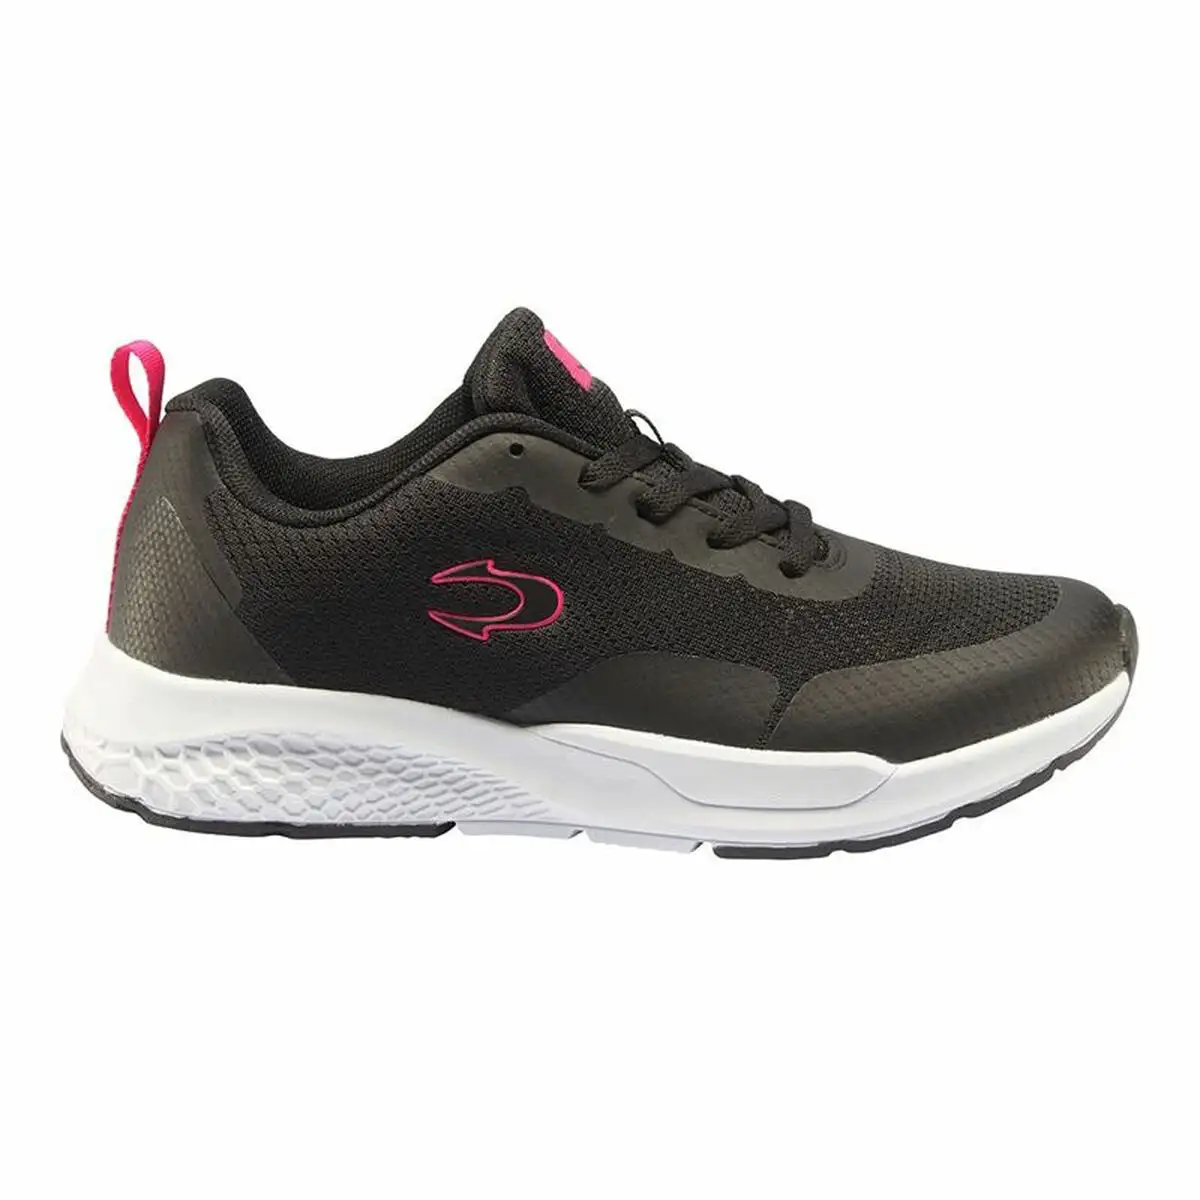 Chaussures de running pour adultes john smith ronel femme noir_7207. DIAYTAR SENEGAL - Là où Choisir est une Affirmation de Style. Naviguez à travers notre boutique en ligne et choisissez des produits qui vous distinguent et vous valorisent.